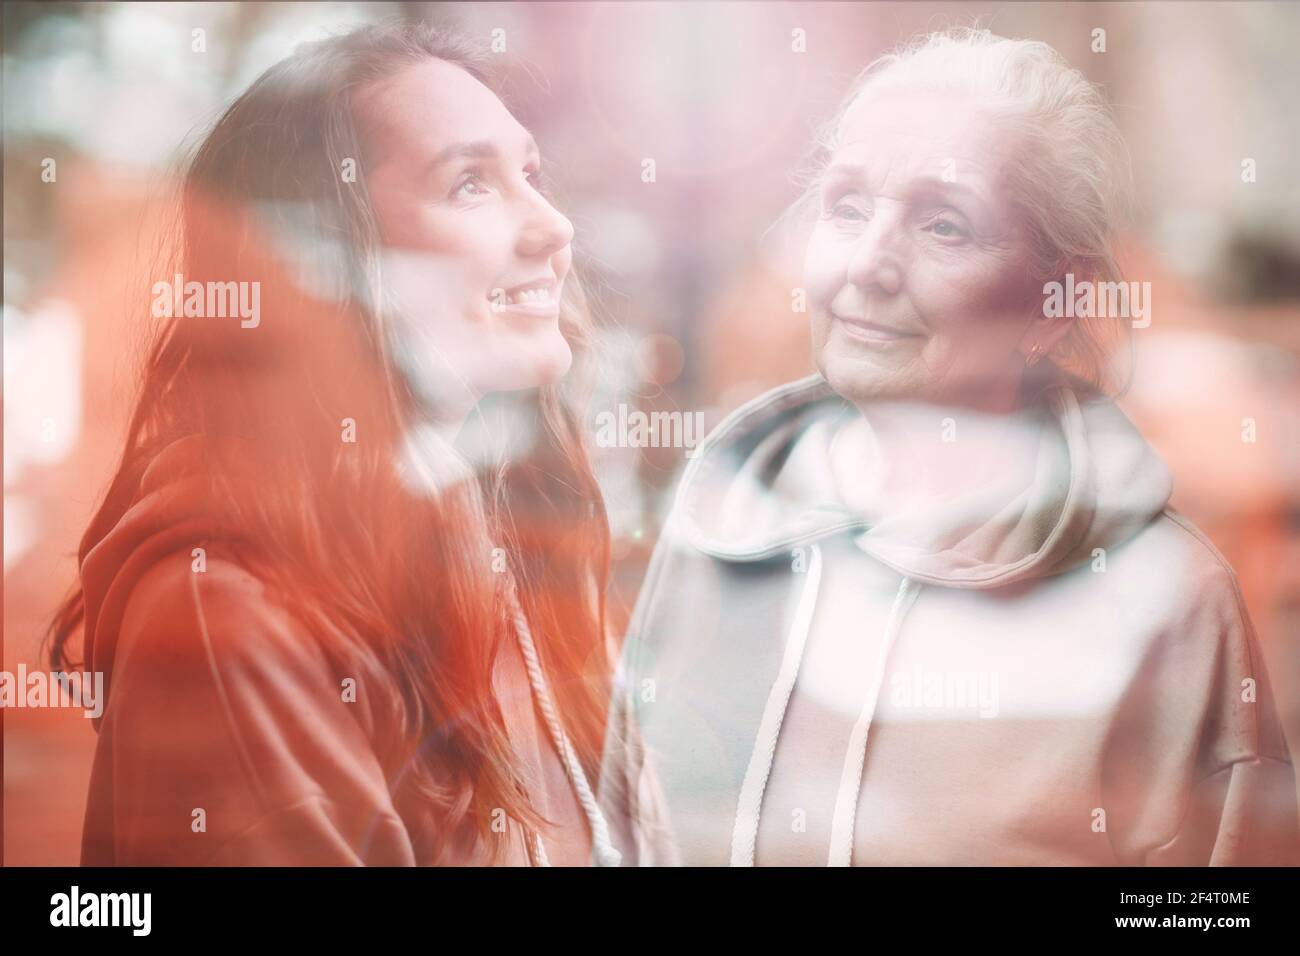 Großmutter und Enkelin Frauen doppelte Belichtung Bild. Porträt einer jungen und älteren Frau. Liebe, Generation, Träume und glückliche Familienbeziehungen Konzept Stockfoto